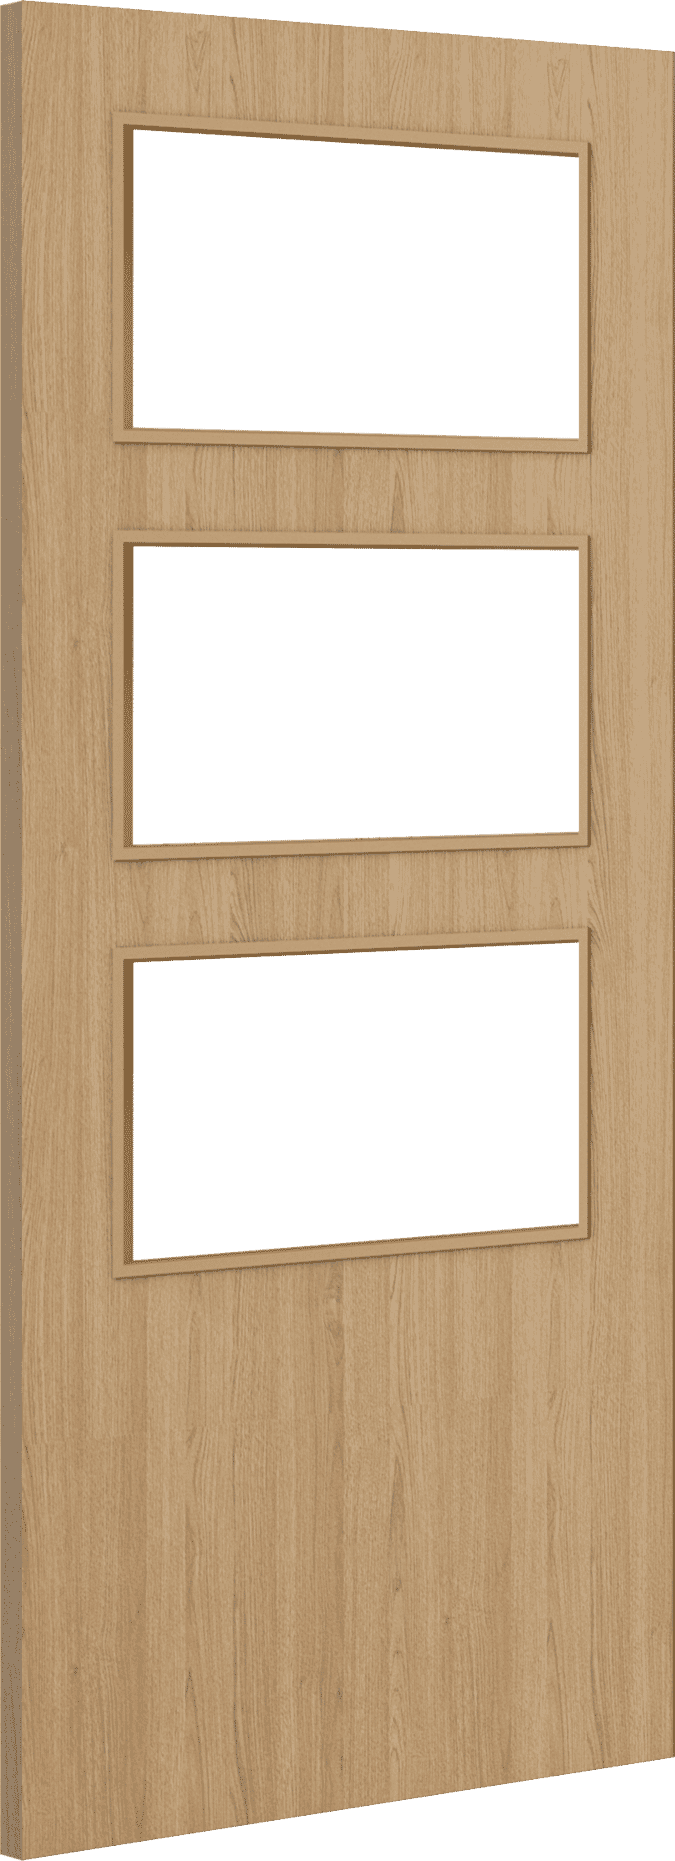 2040mm x 926mm x 44mm Architectural Oak 03 Clear Glazed - Prefinished FD30 Fire Door Blank